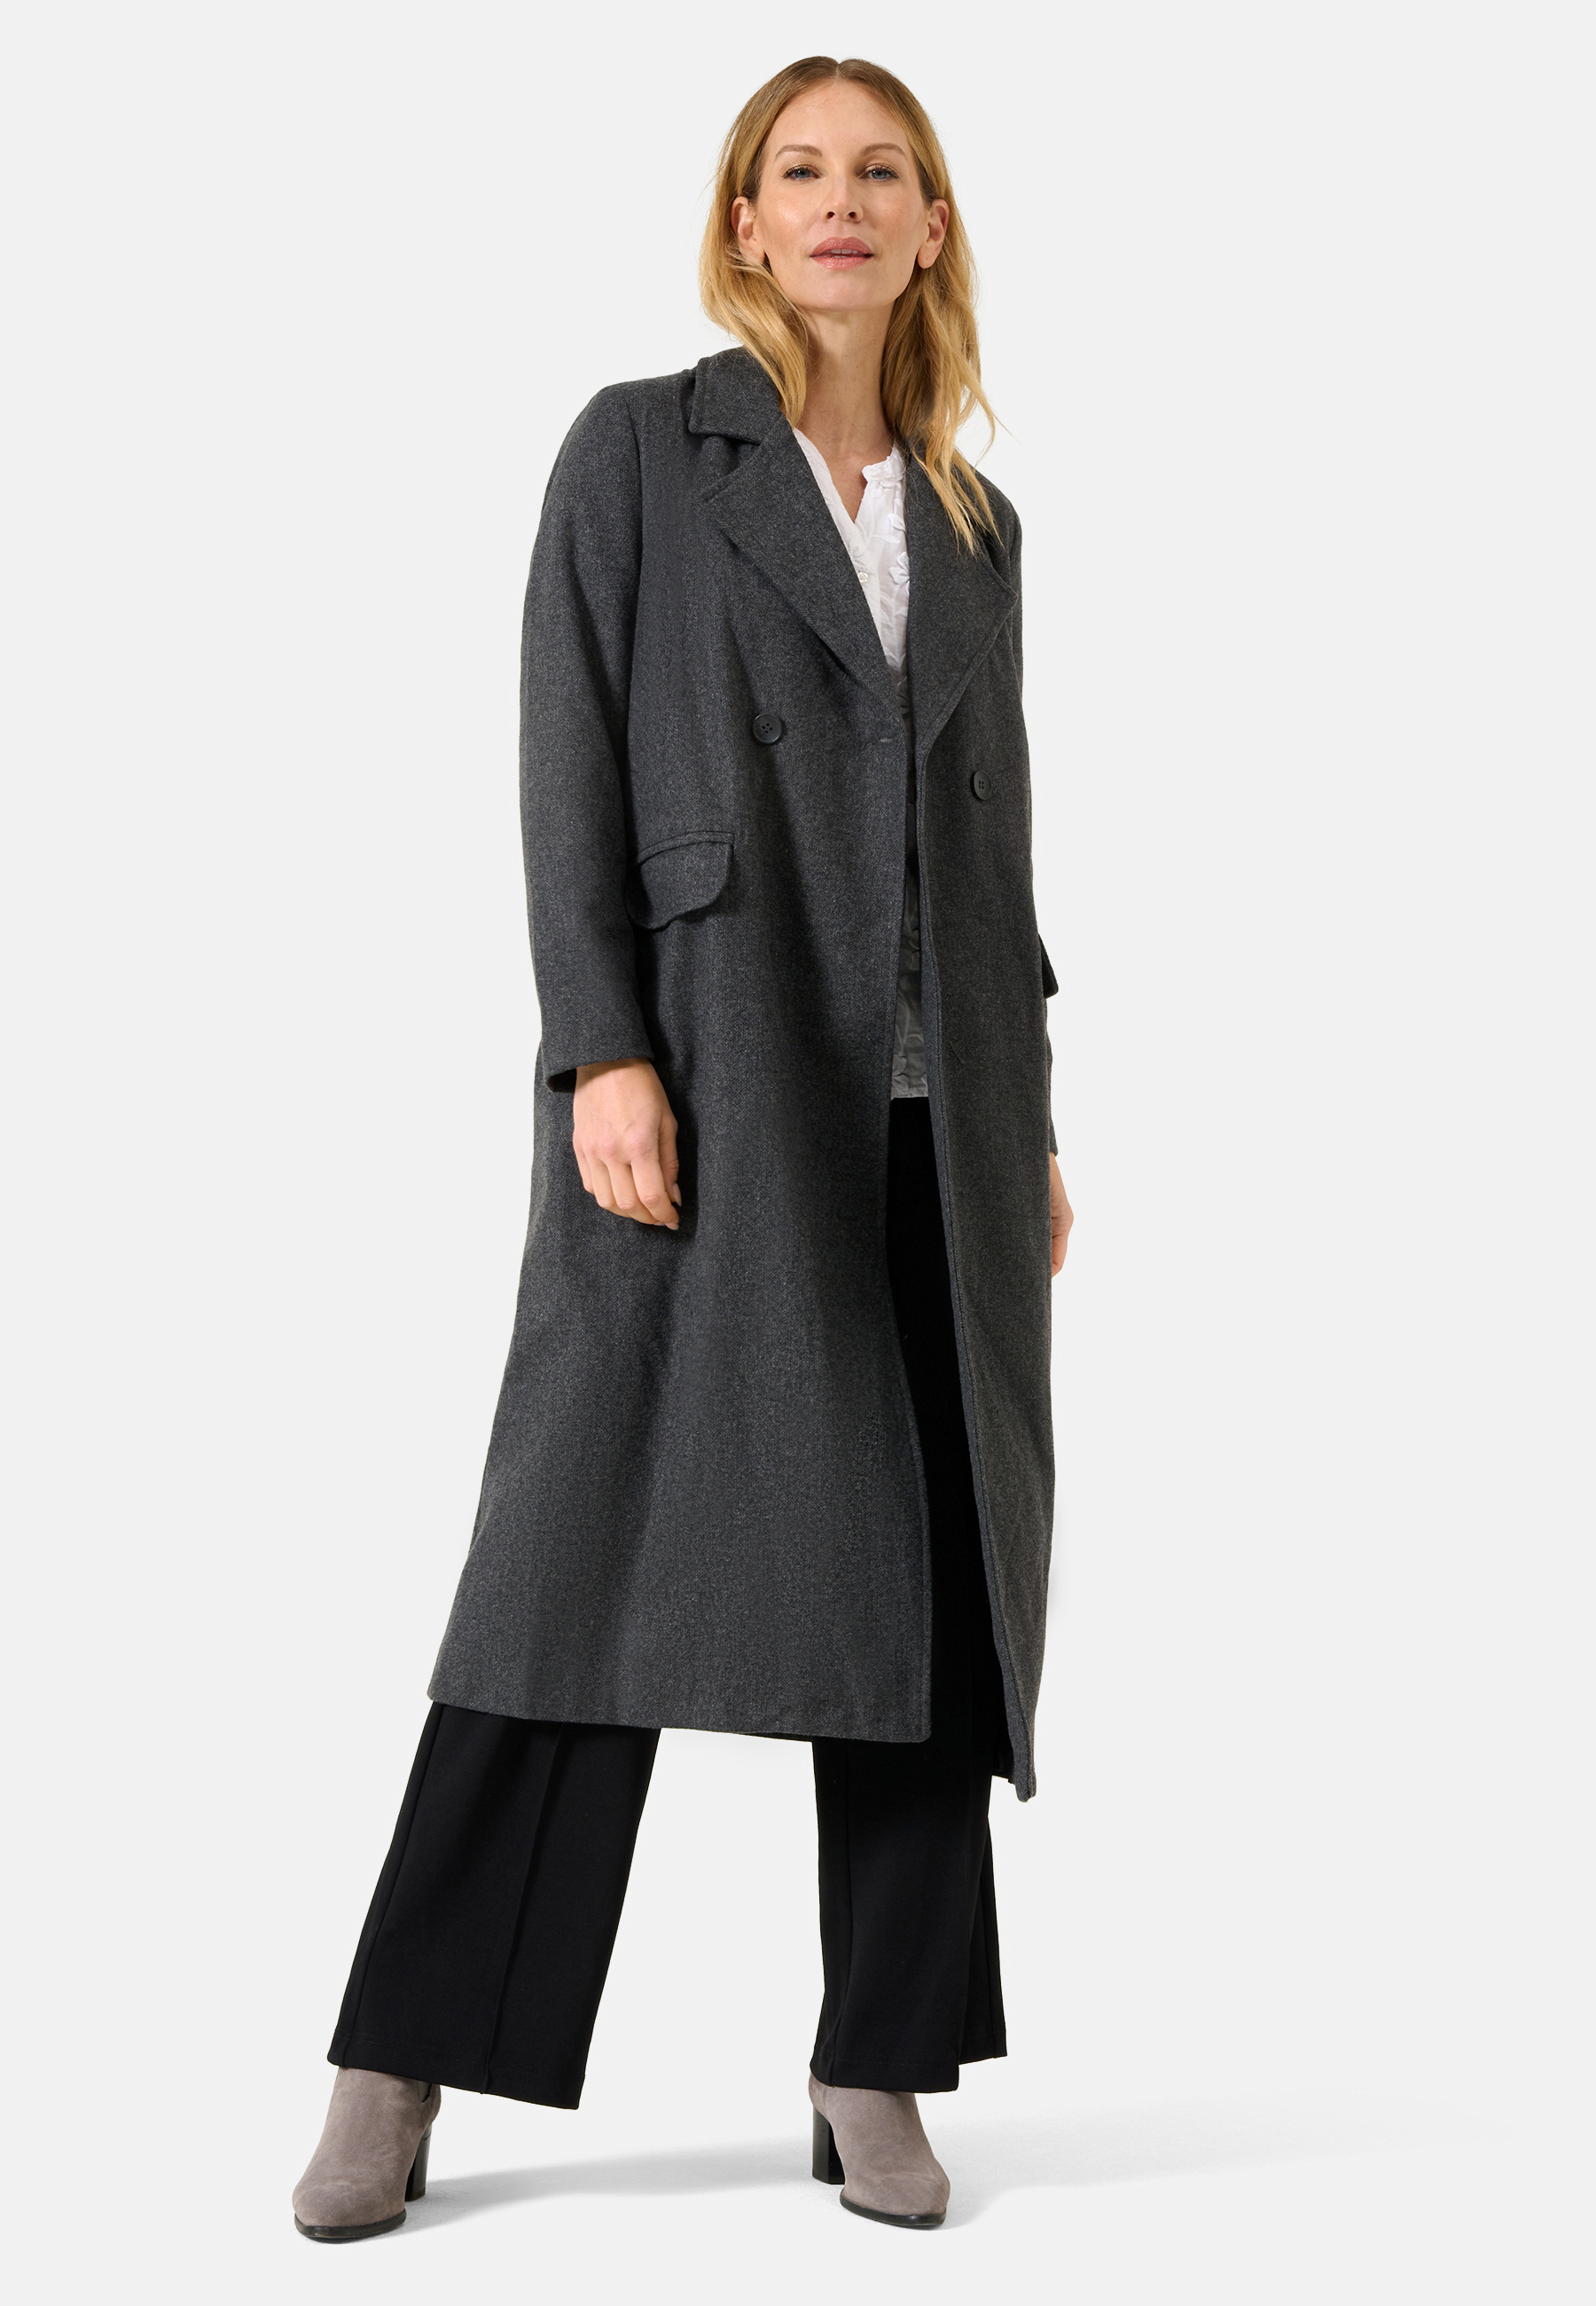 Damen Textil Mantel Alberta in Grau von Ricano, Vollansicht am Model